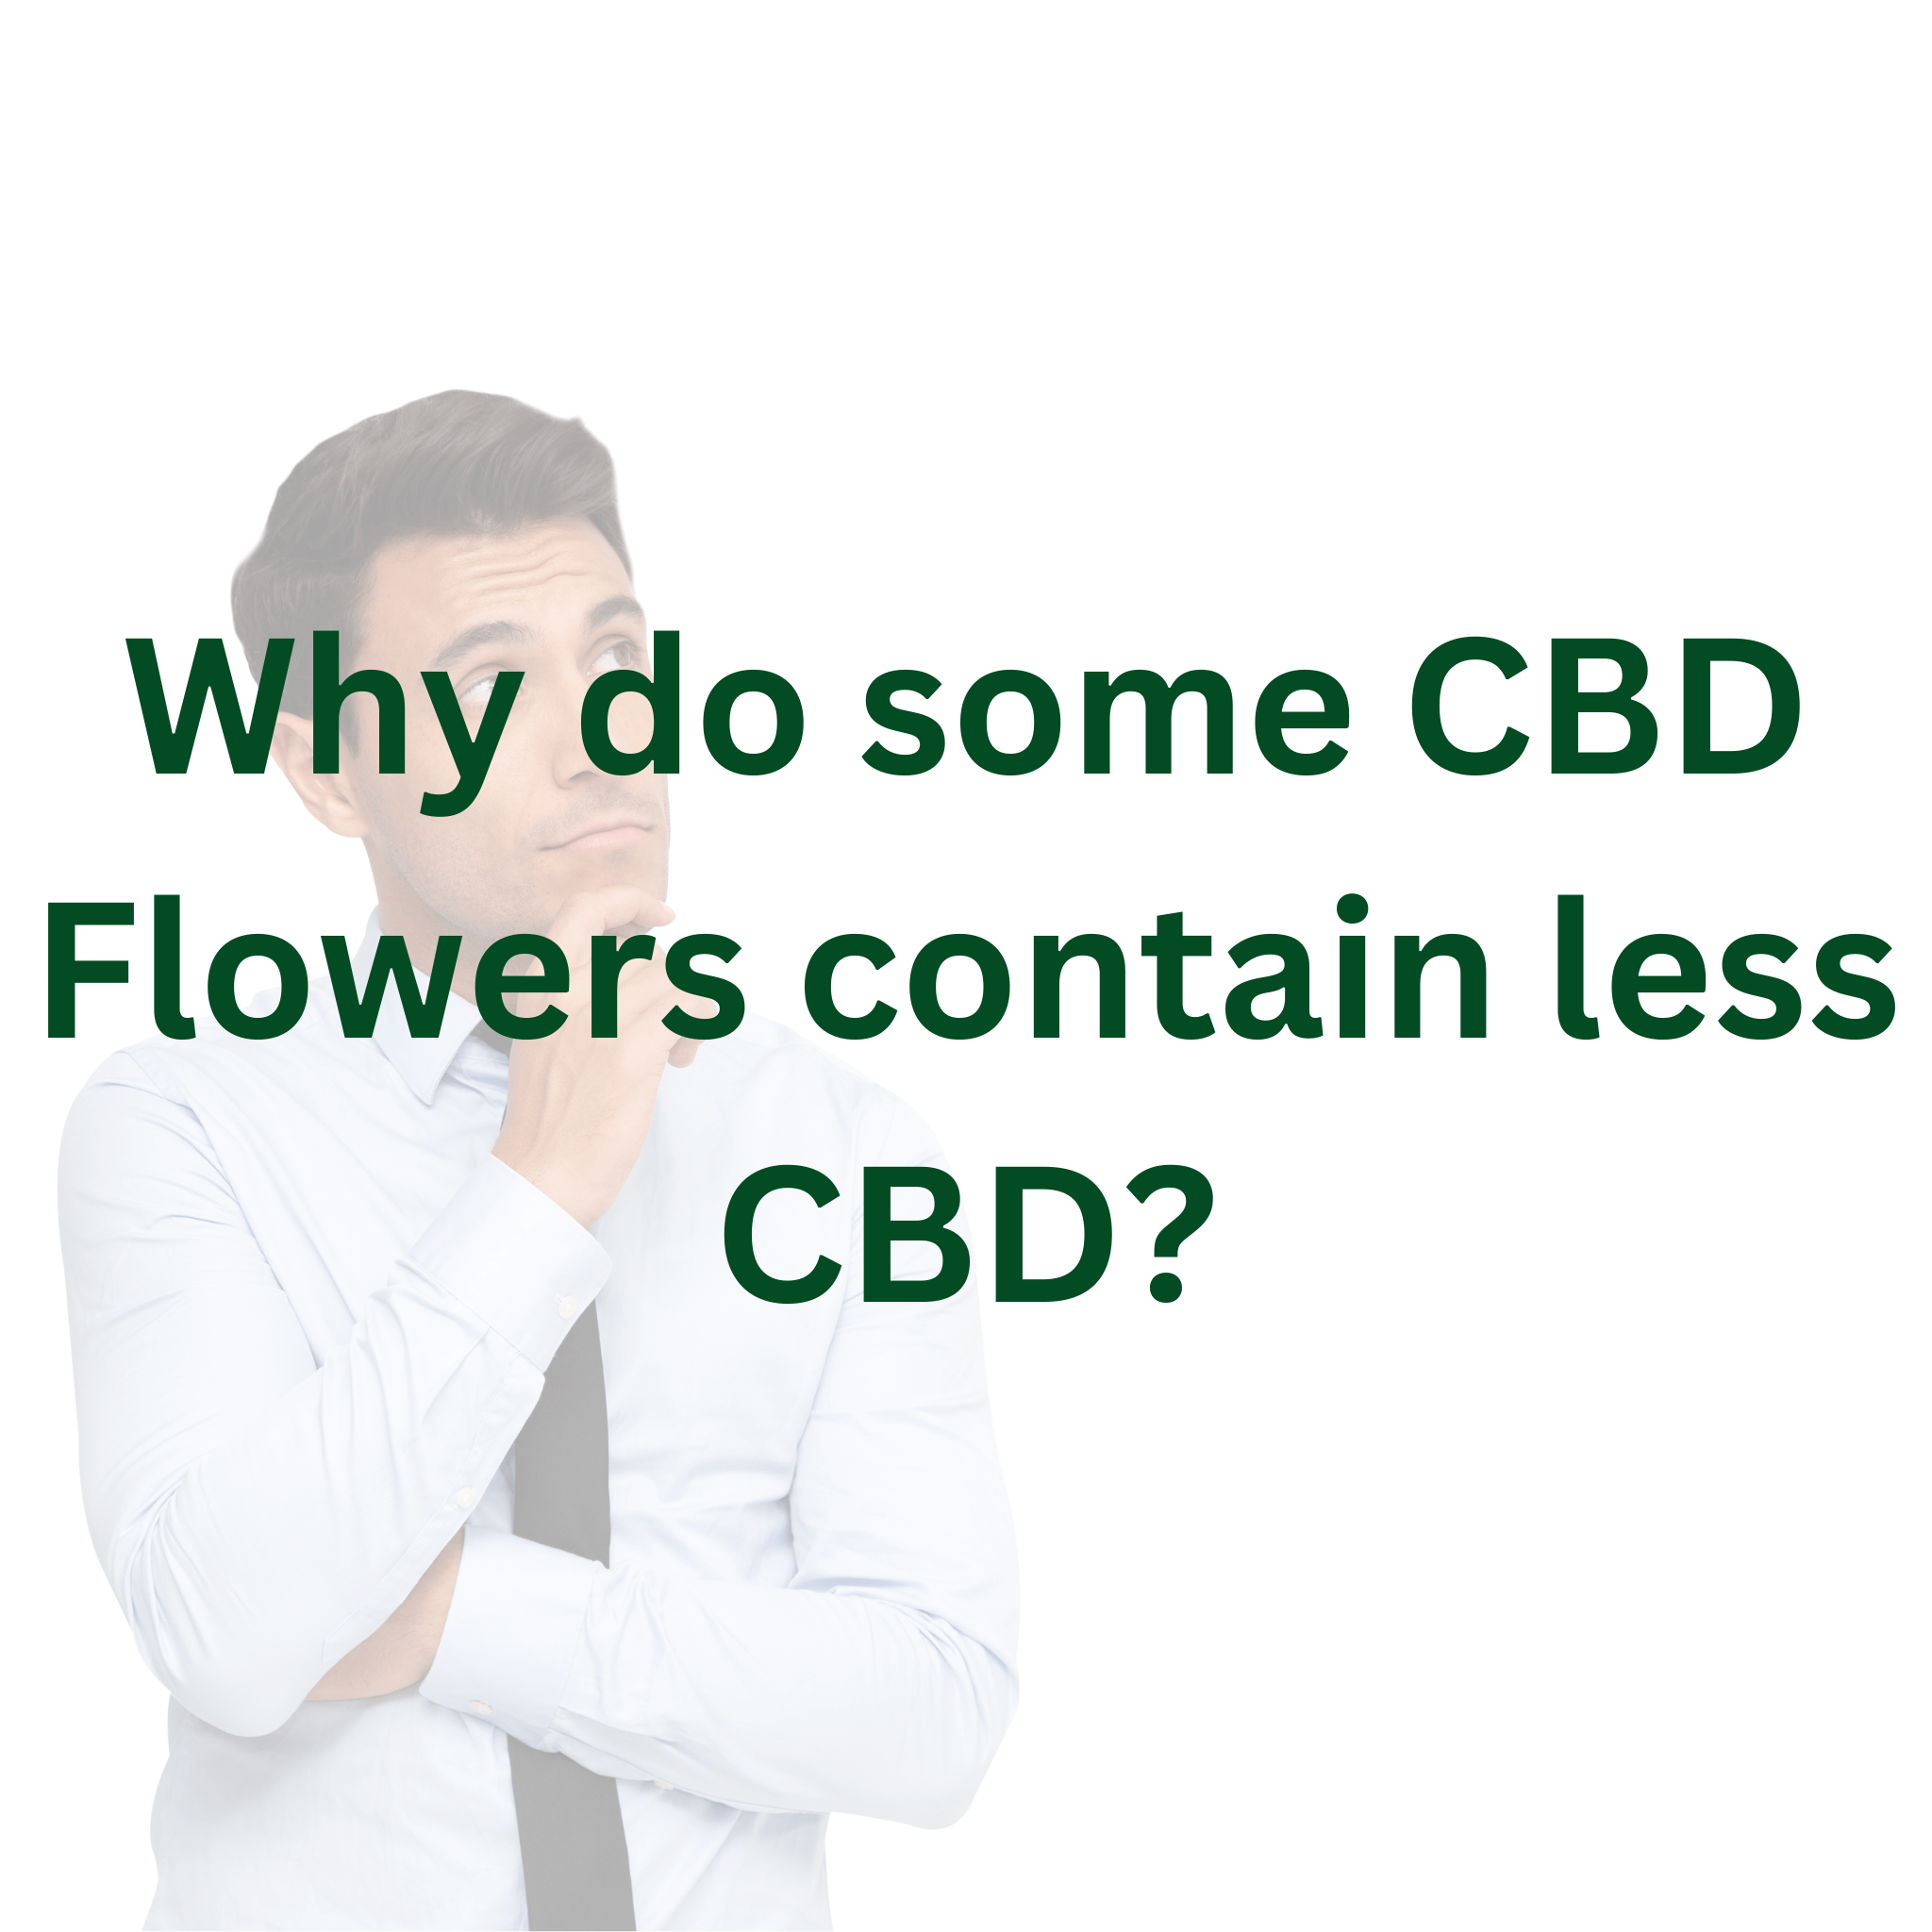 Why do some CBD Flowers contain less CBD?